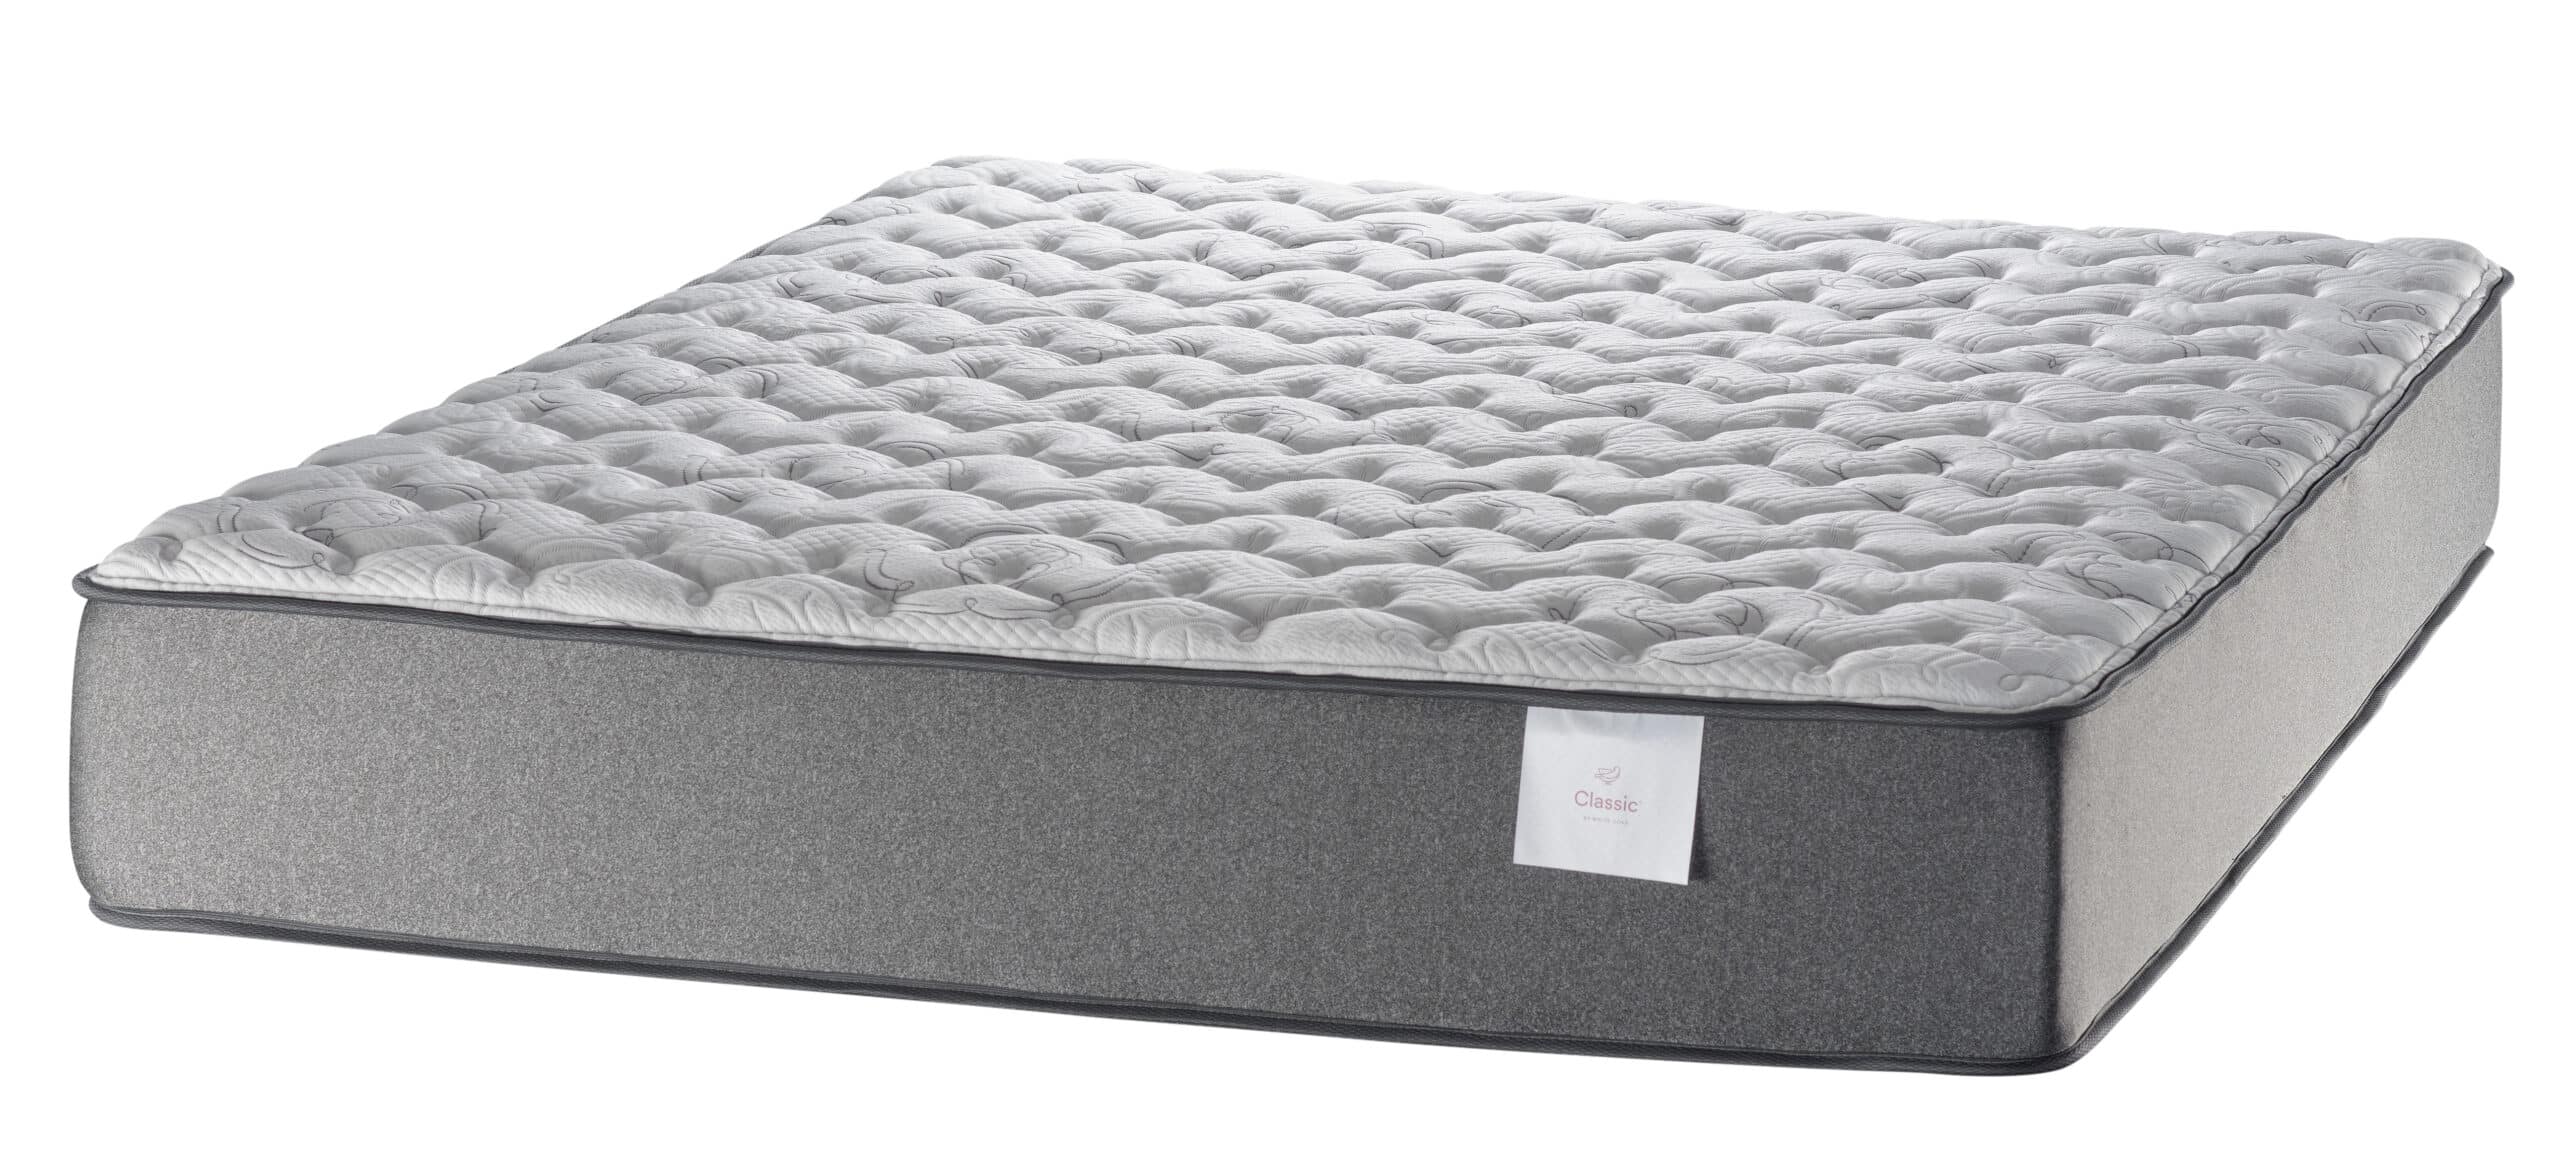 white dove mattress latex